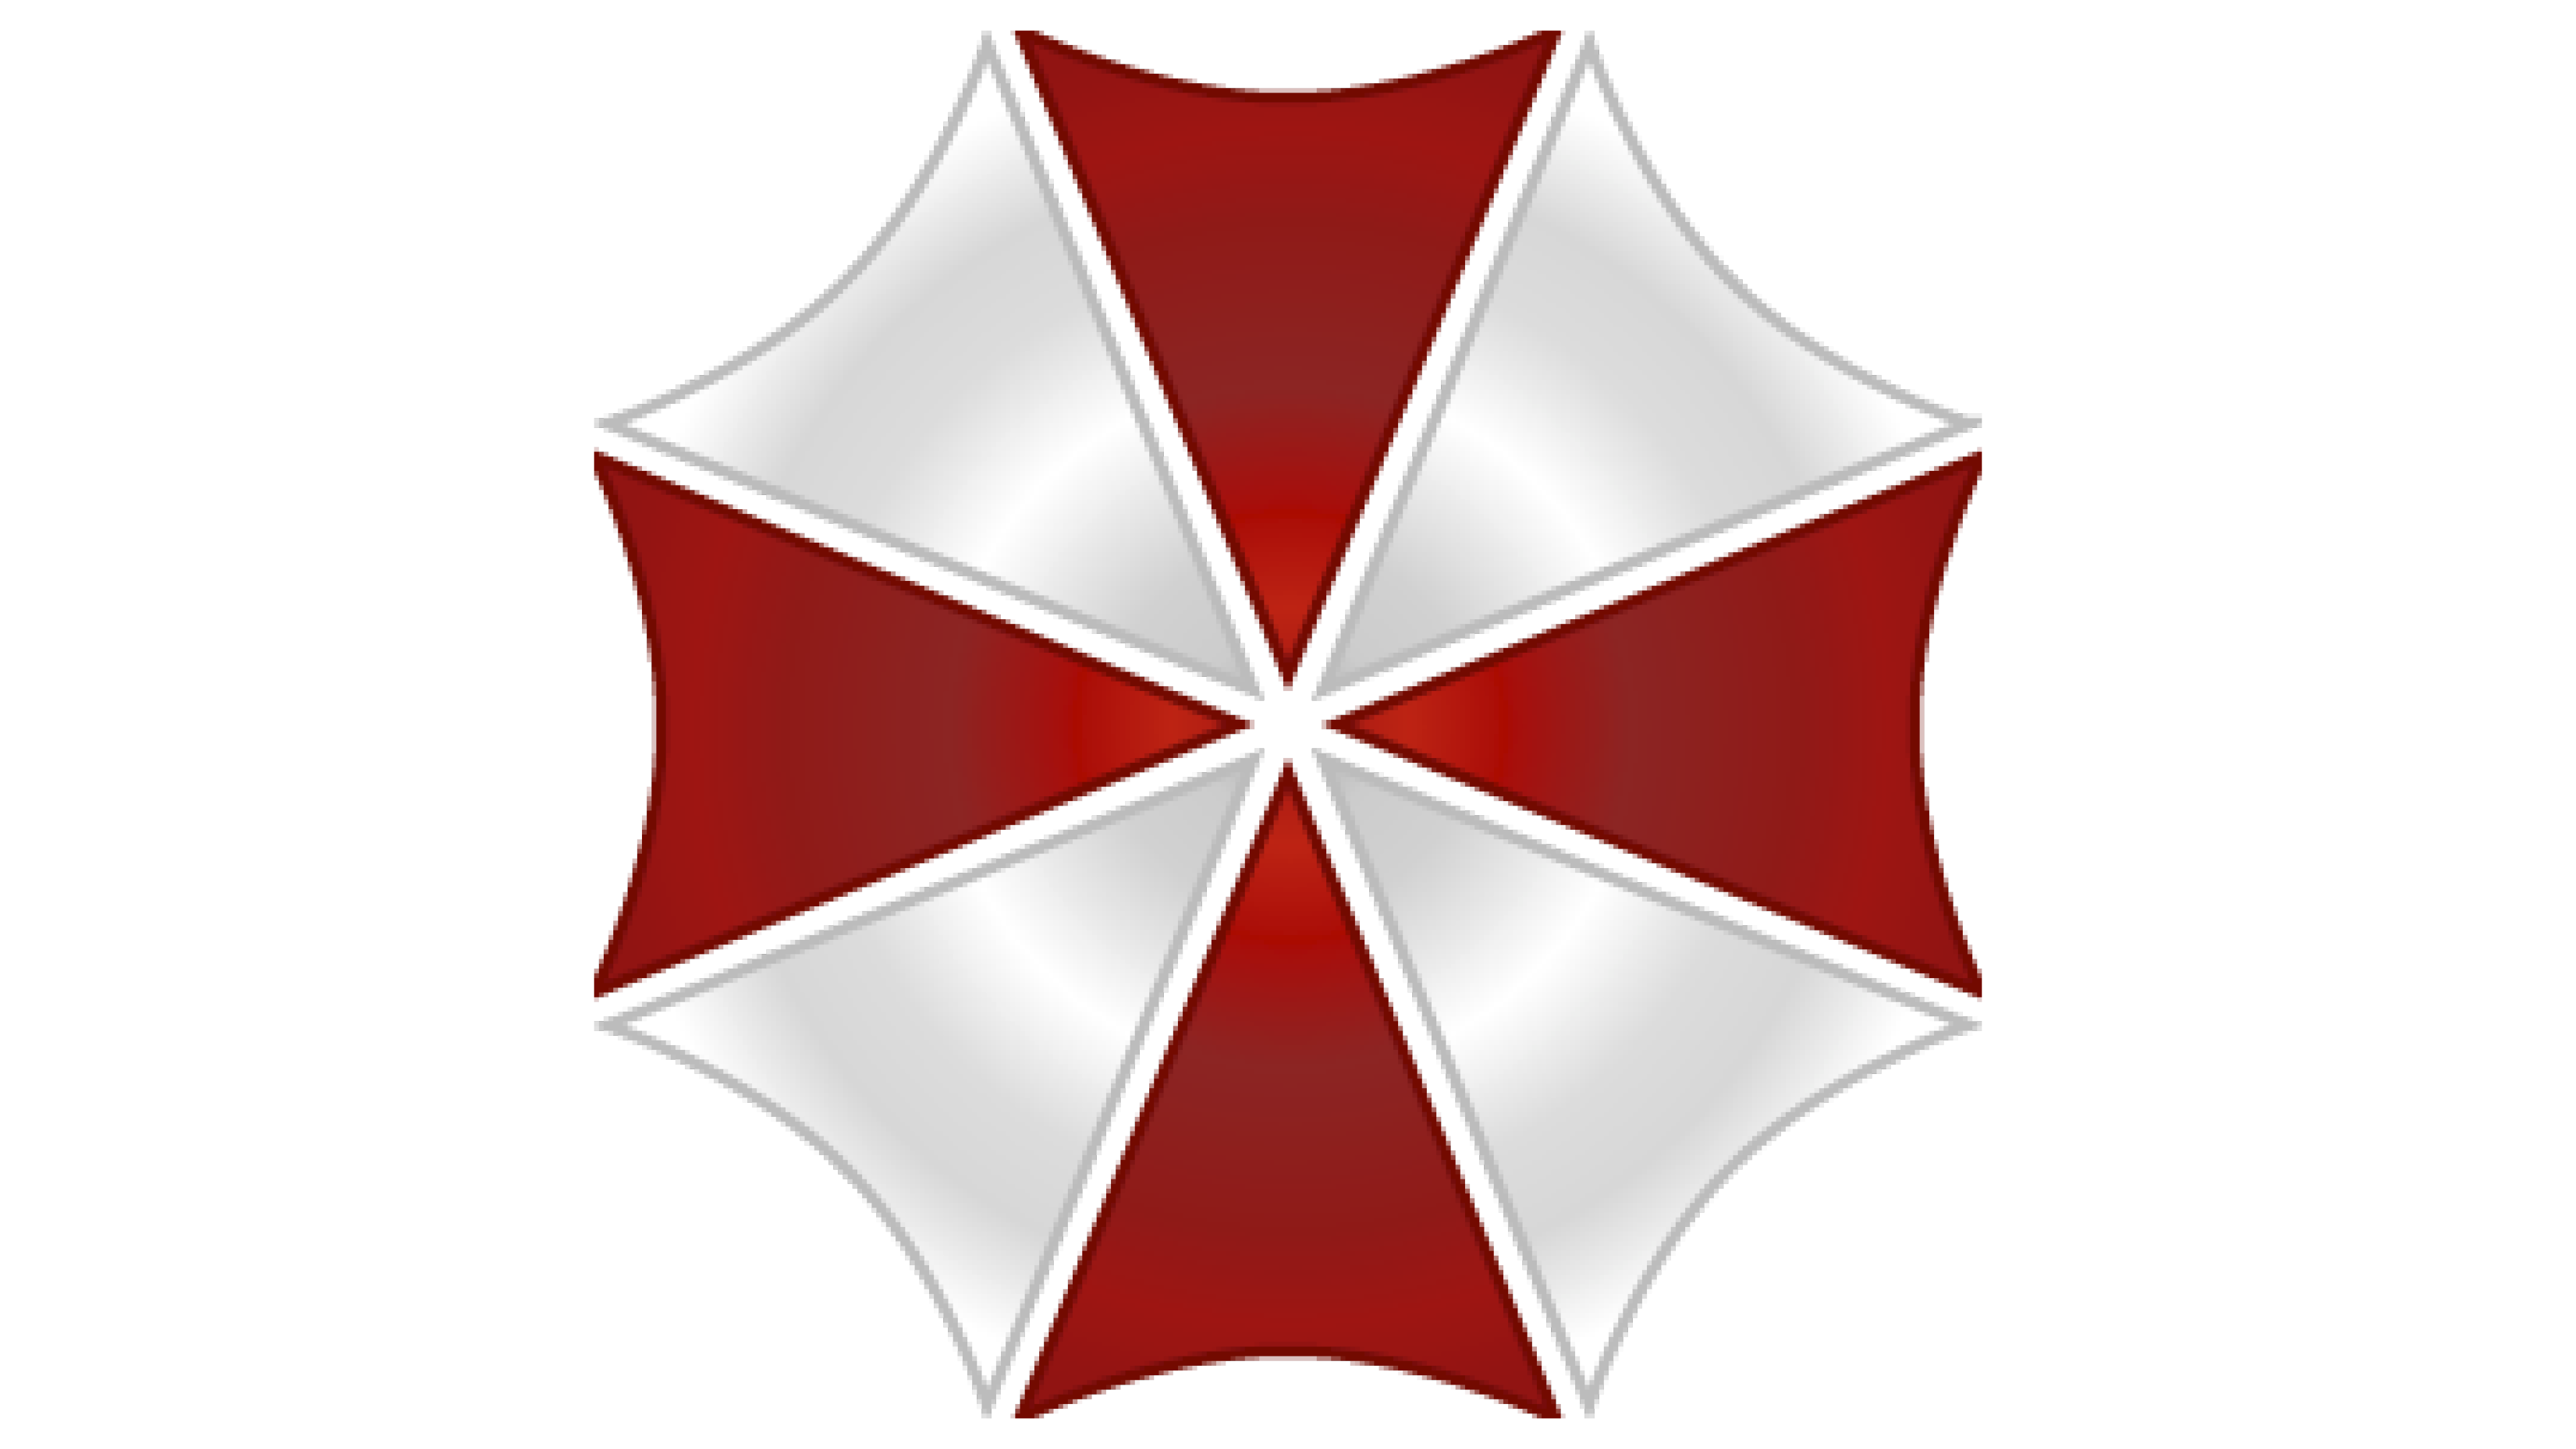 Umbrella Corps Umbrella Corporation Logo, umbrella, company, text